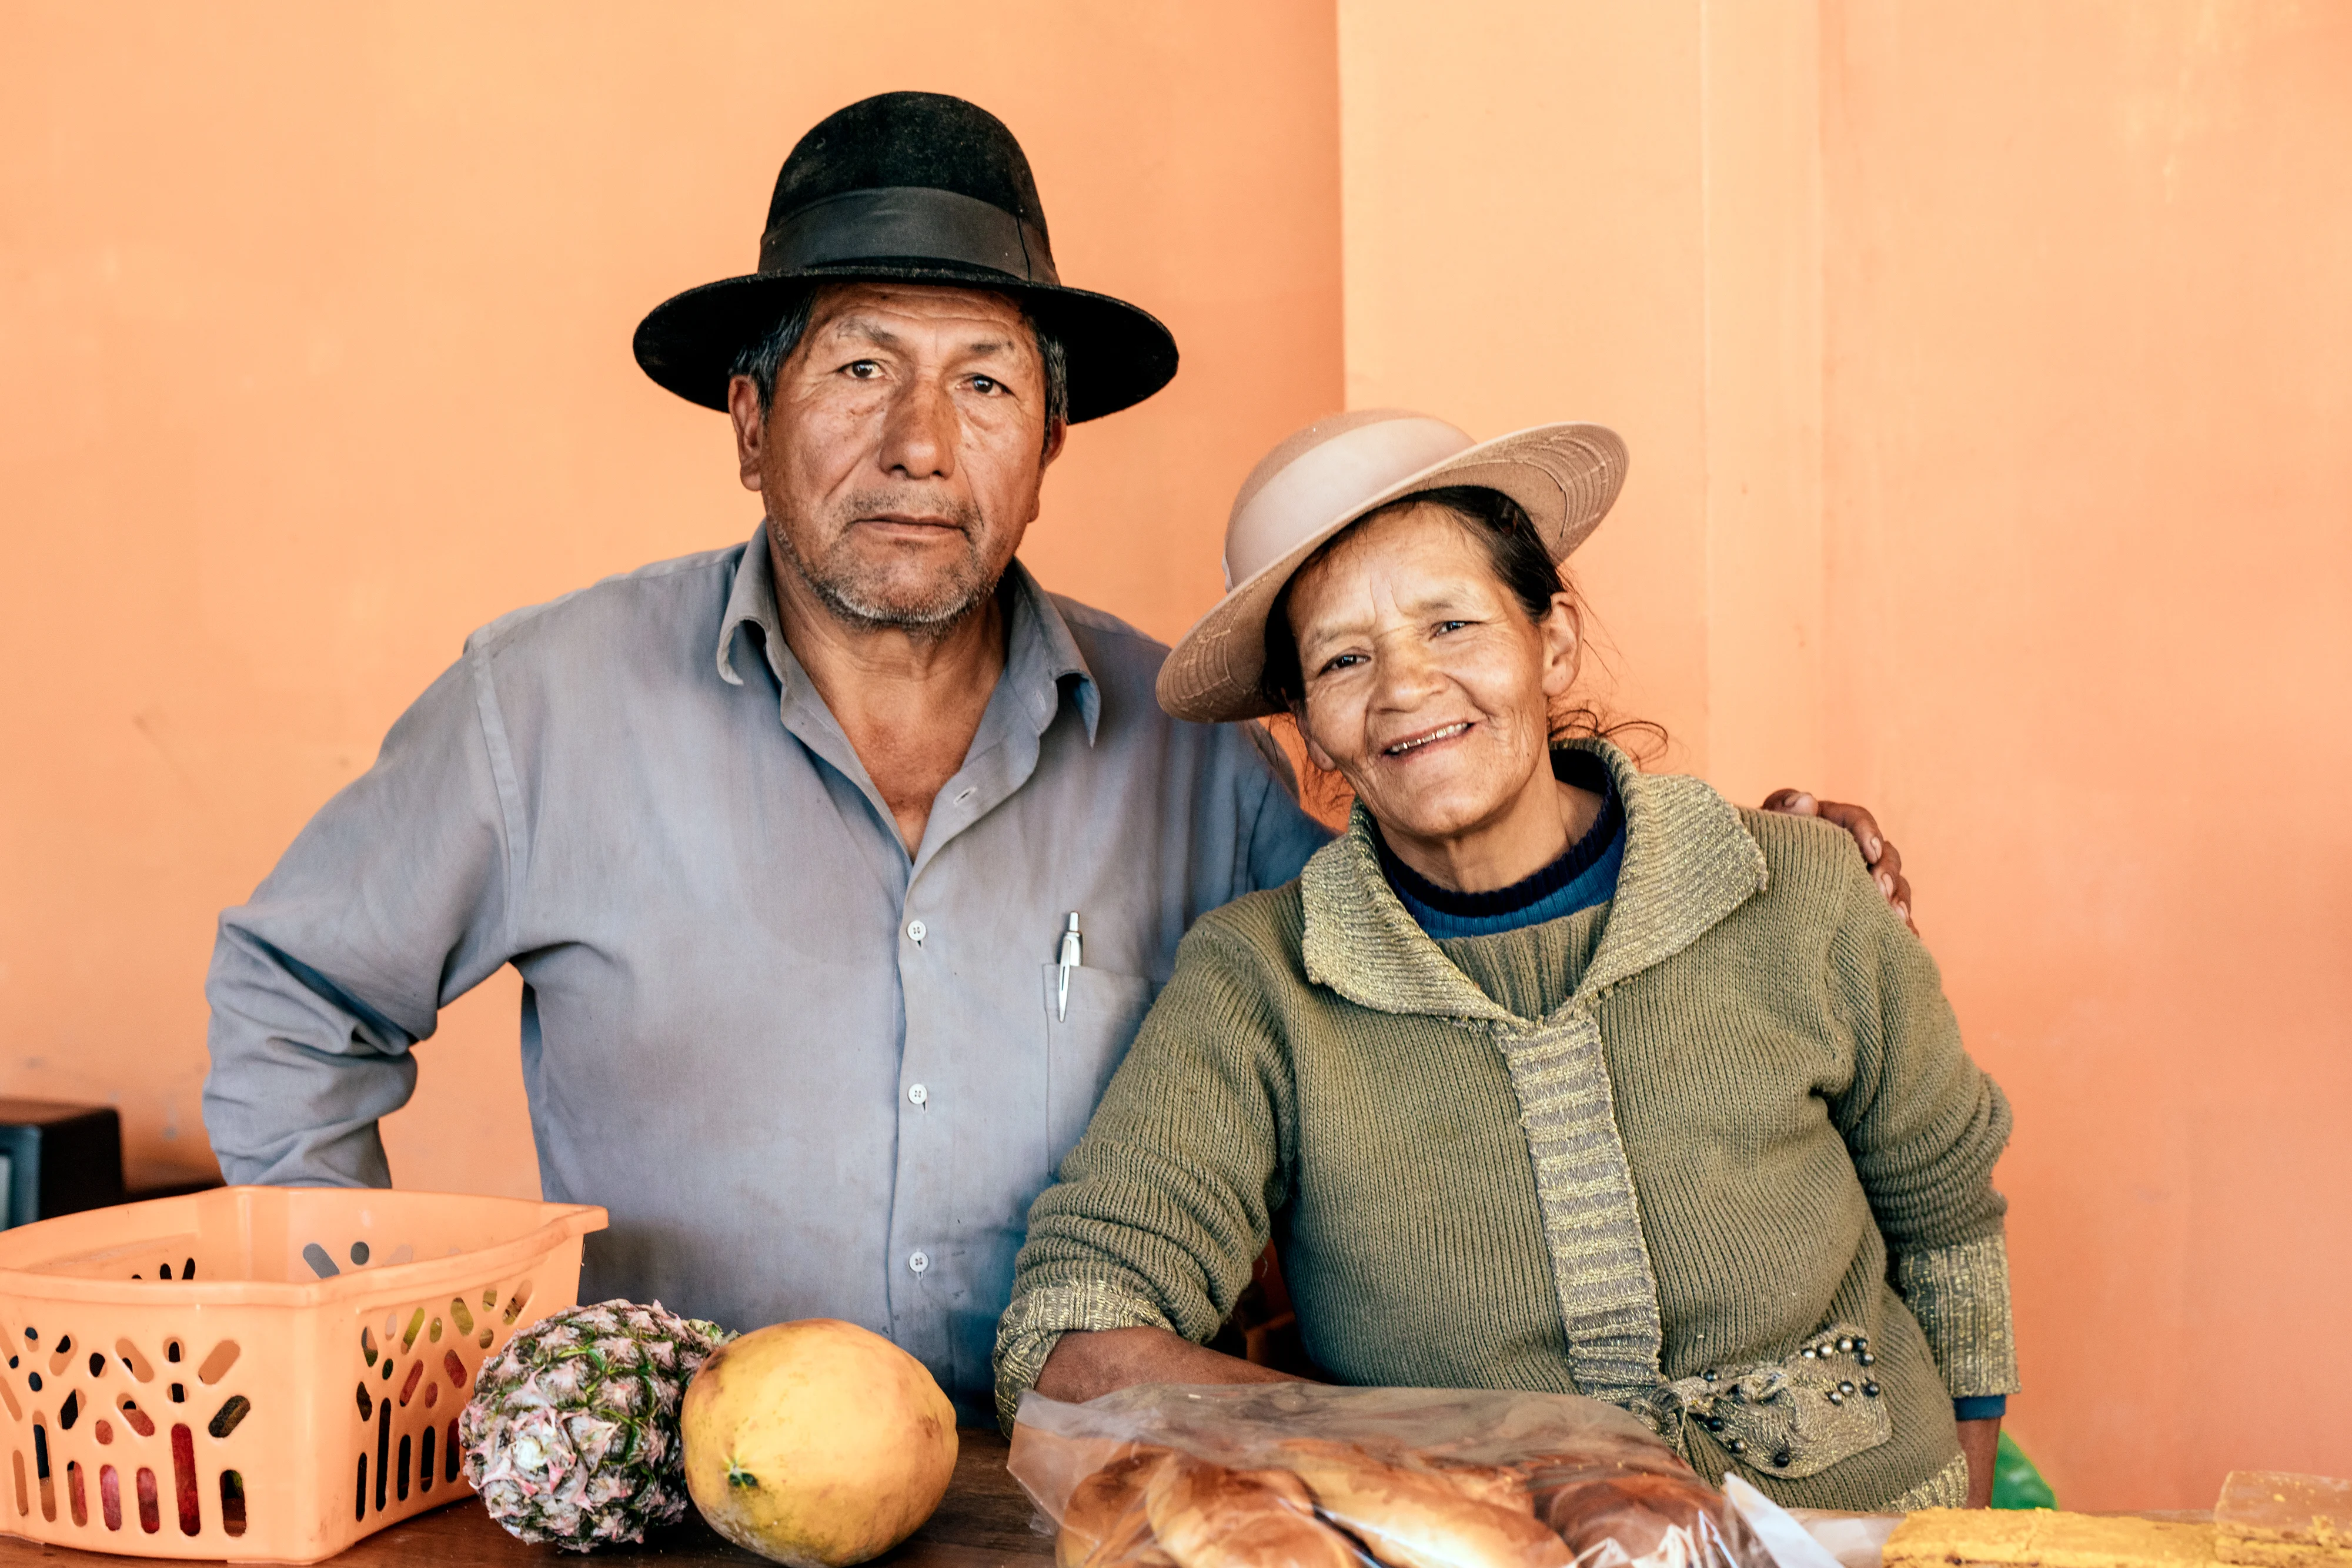 Peru couple on orange background